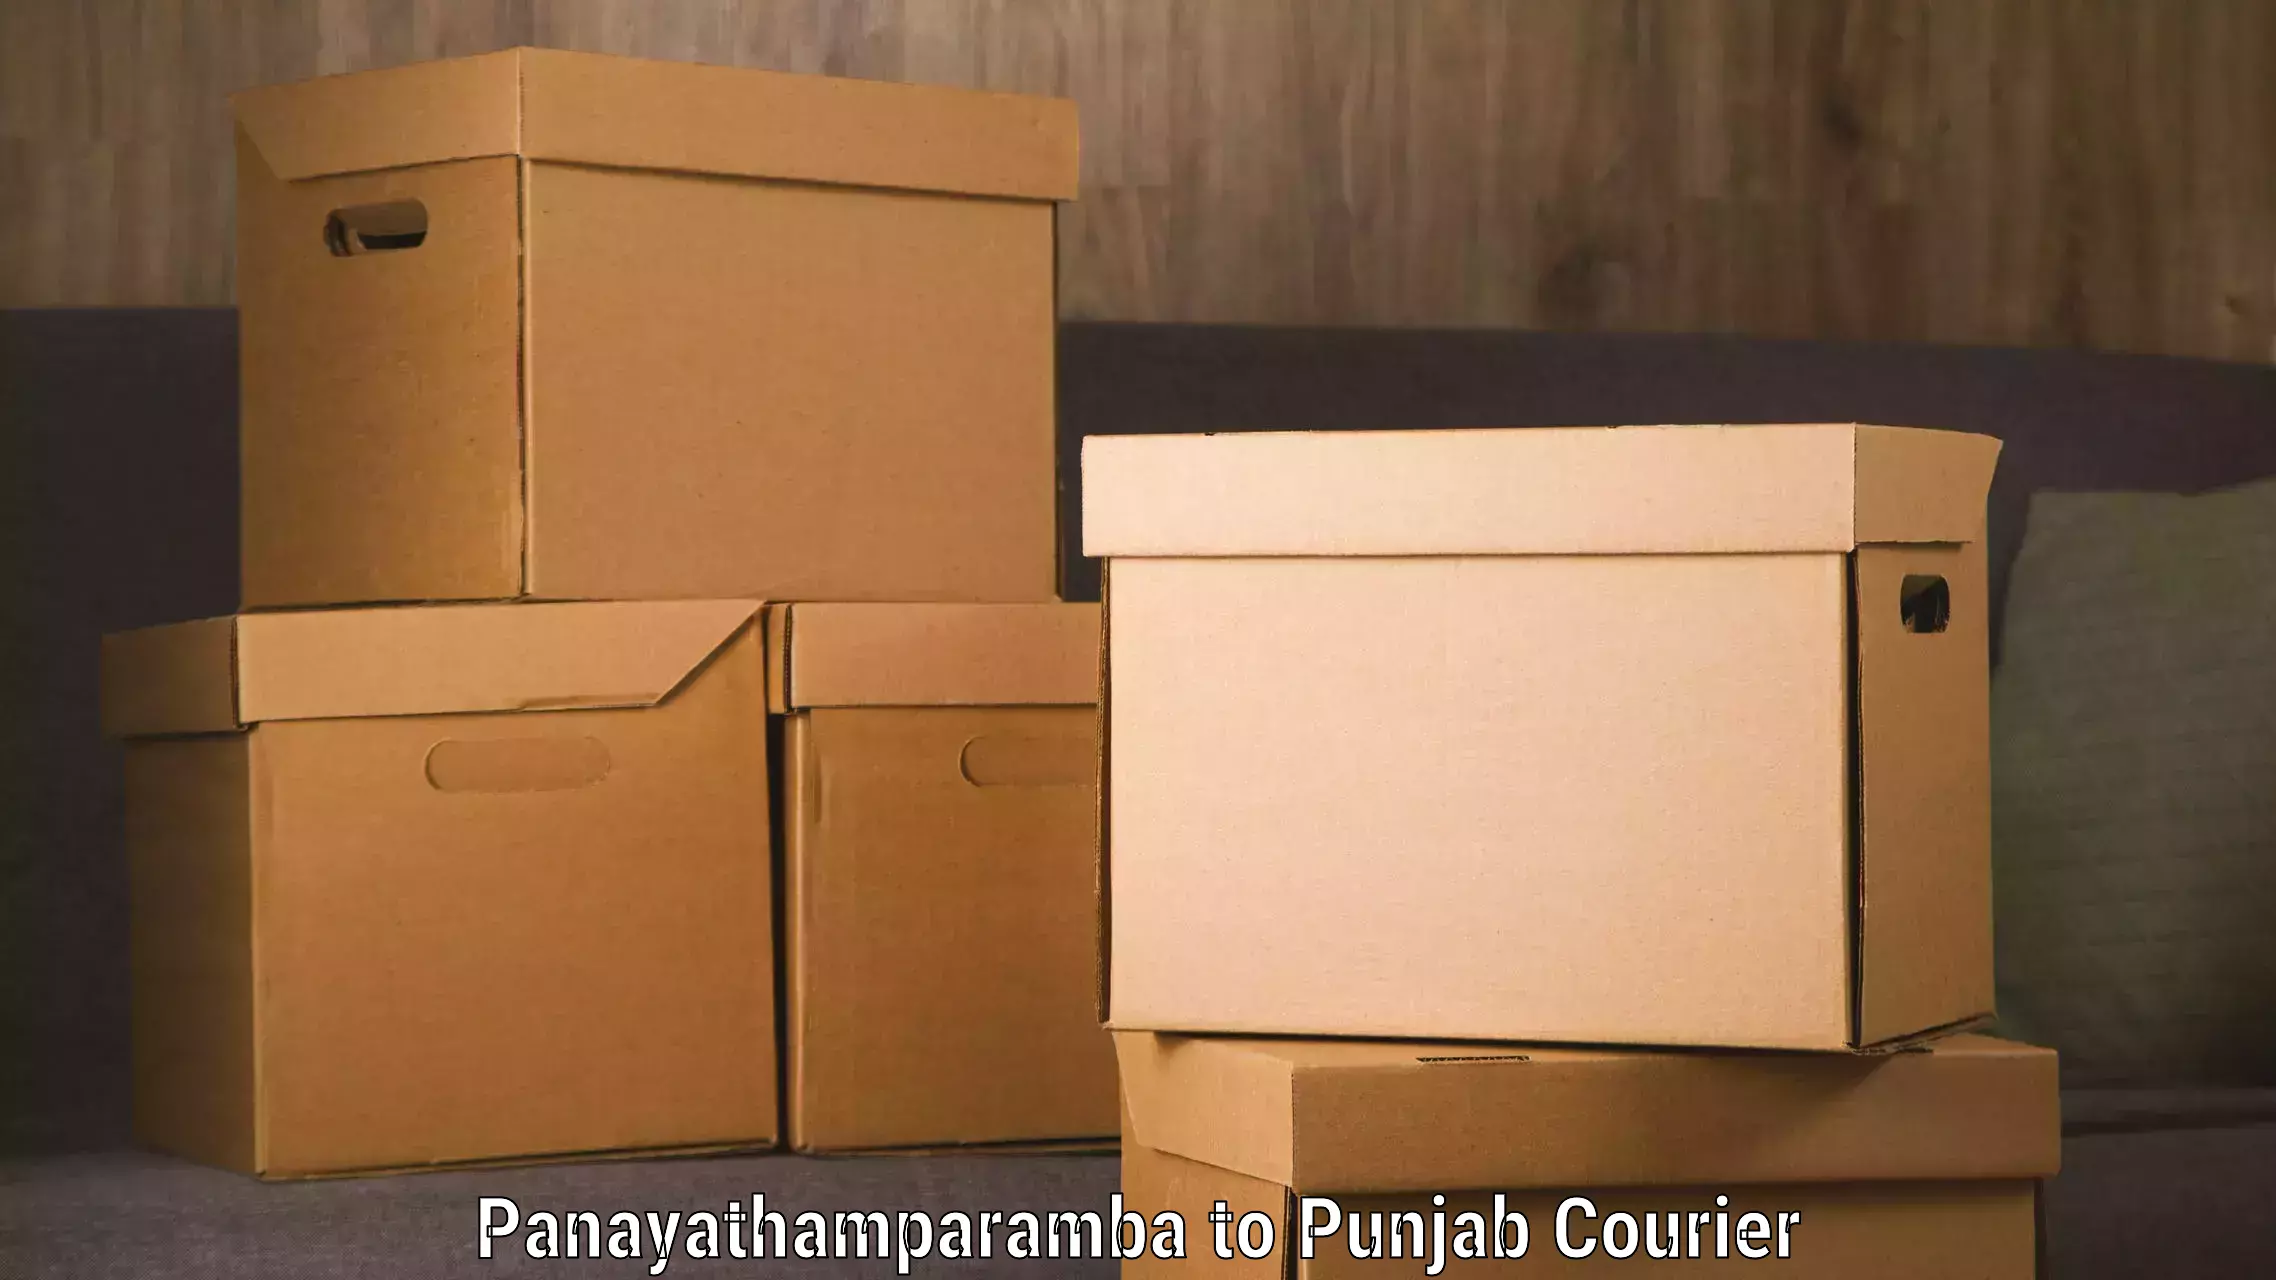 Multi-service courier options Panayathamparamba to Punjab